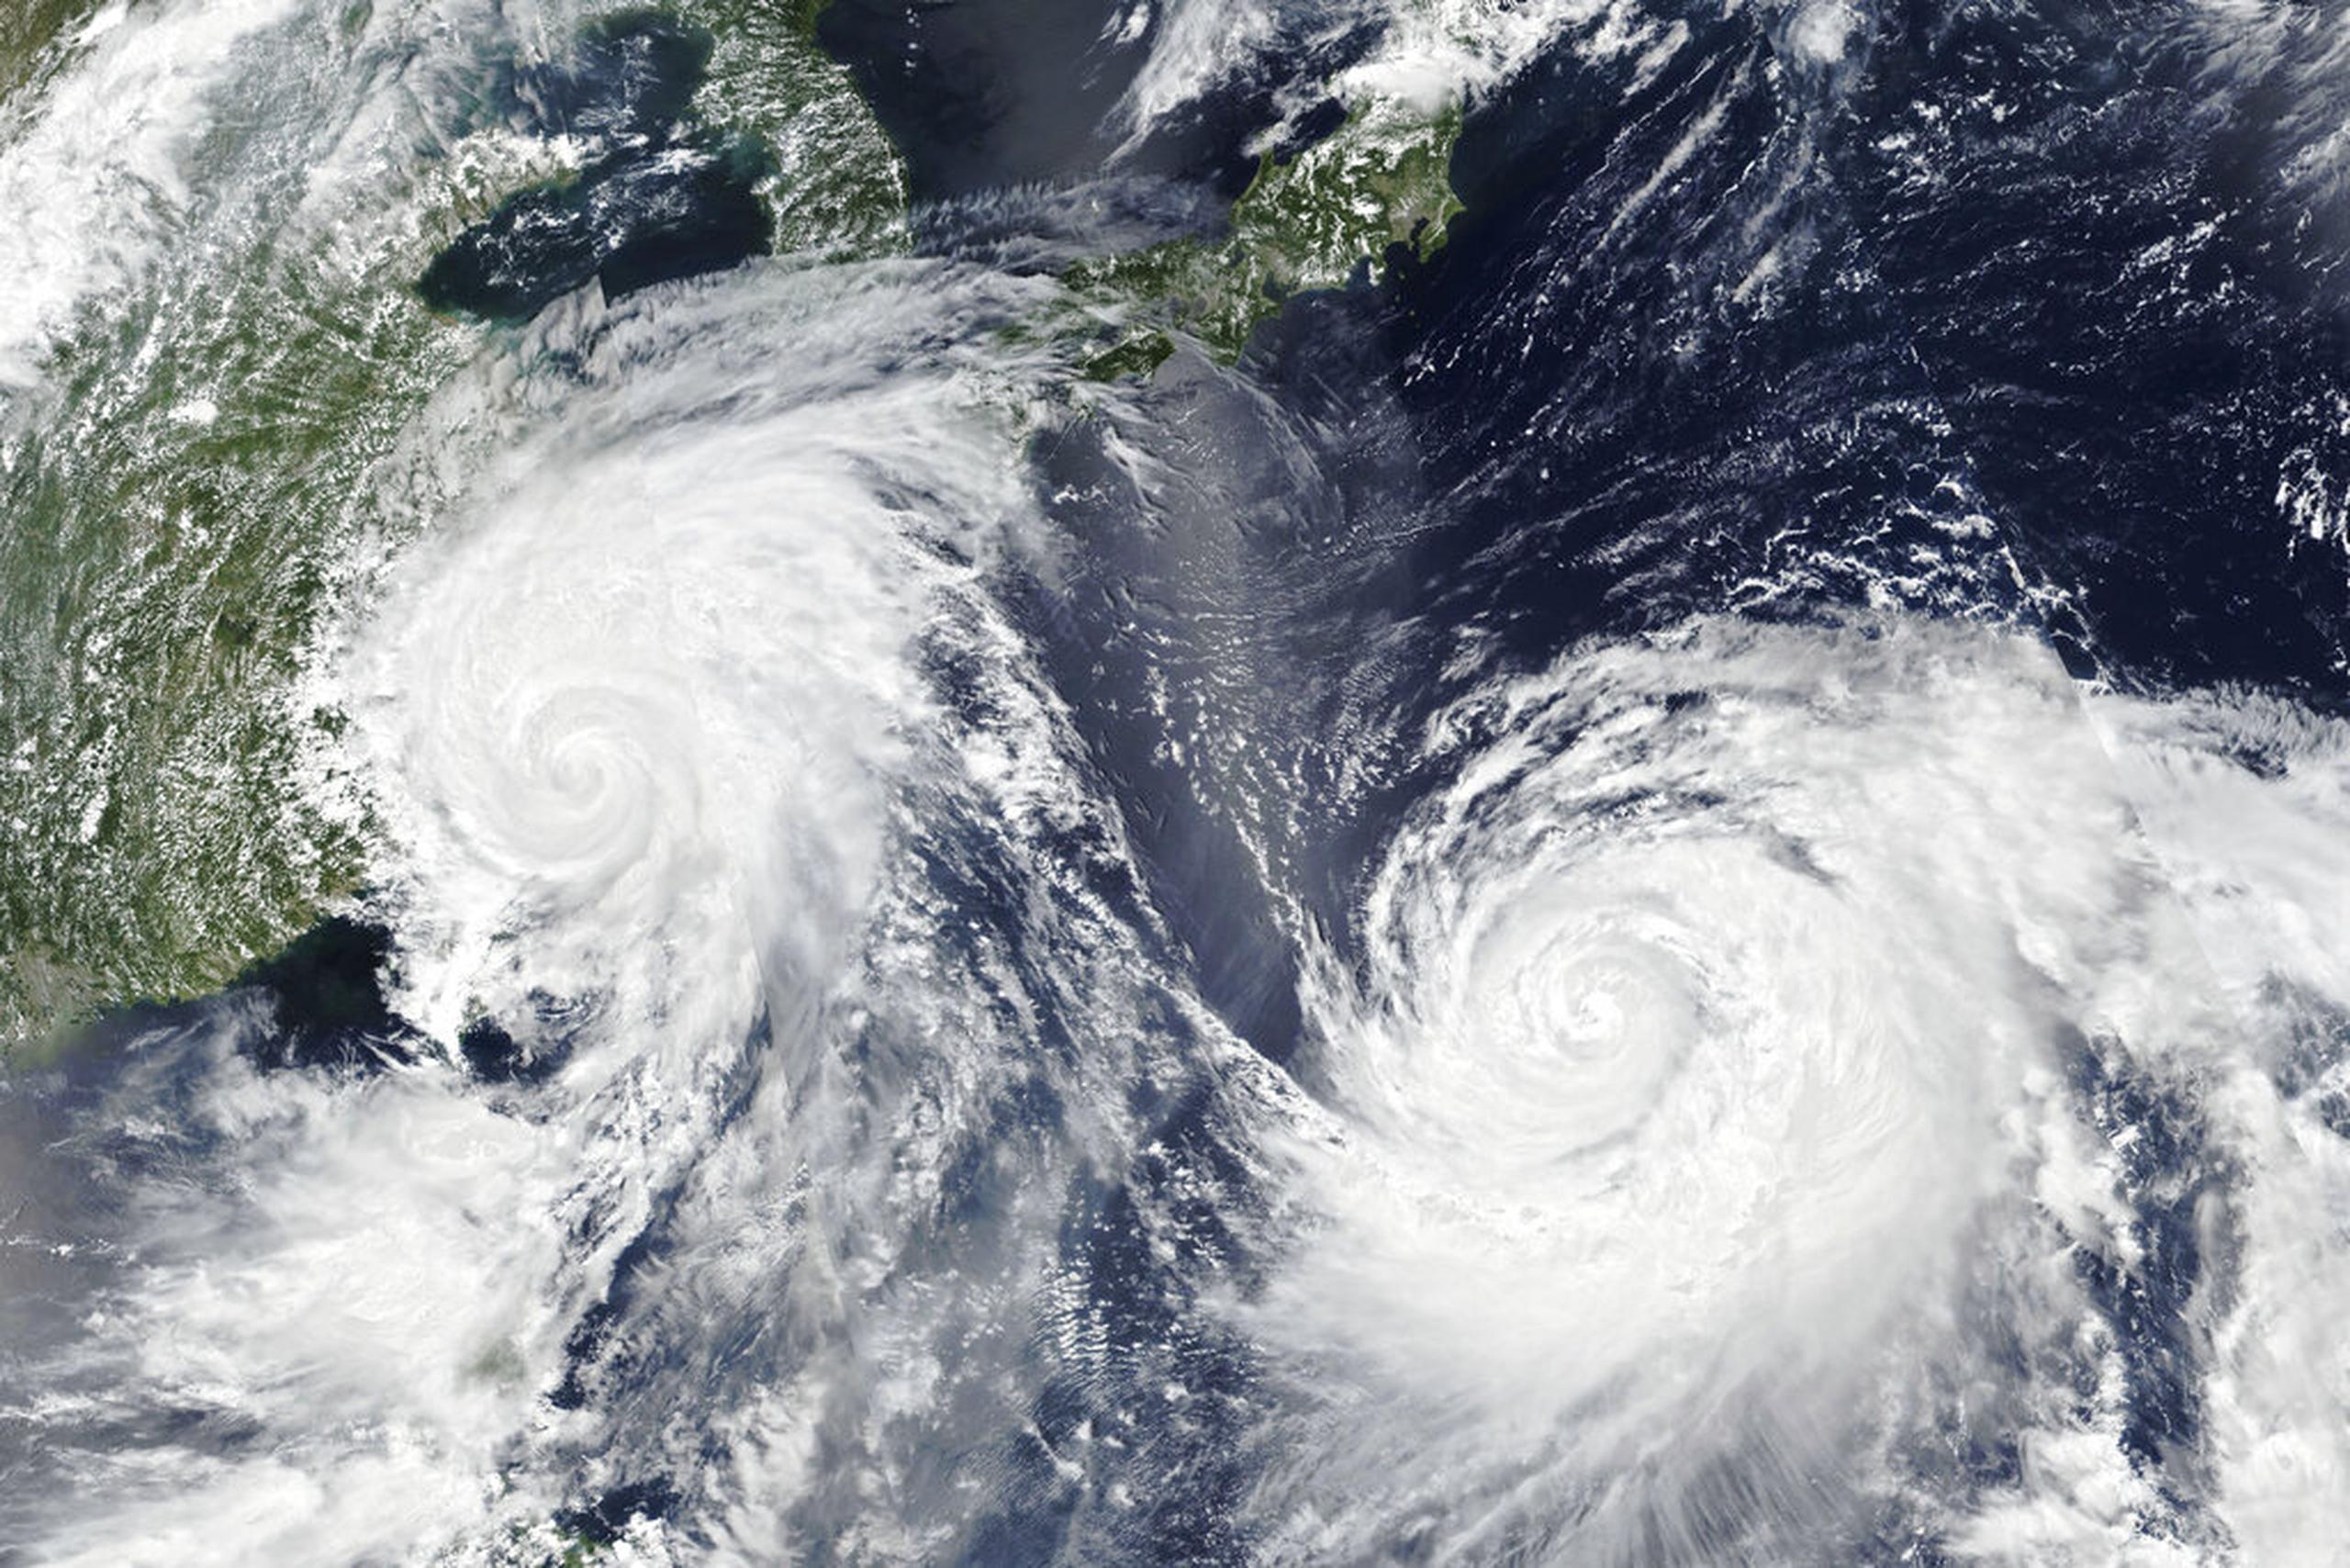 La cuenca más intensa de ciclones tropicales se ubica en el Pacífico occidental, donde suceden la mayoría de las recaladas y el desplazamiento hacia el oeste es dos veces mayor que el promedio global.